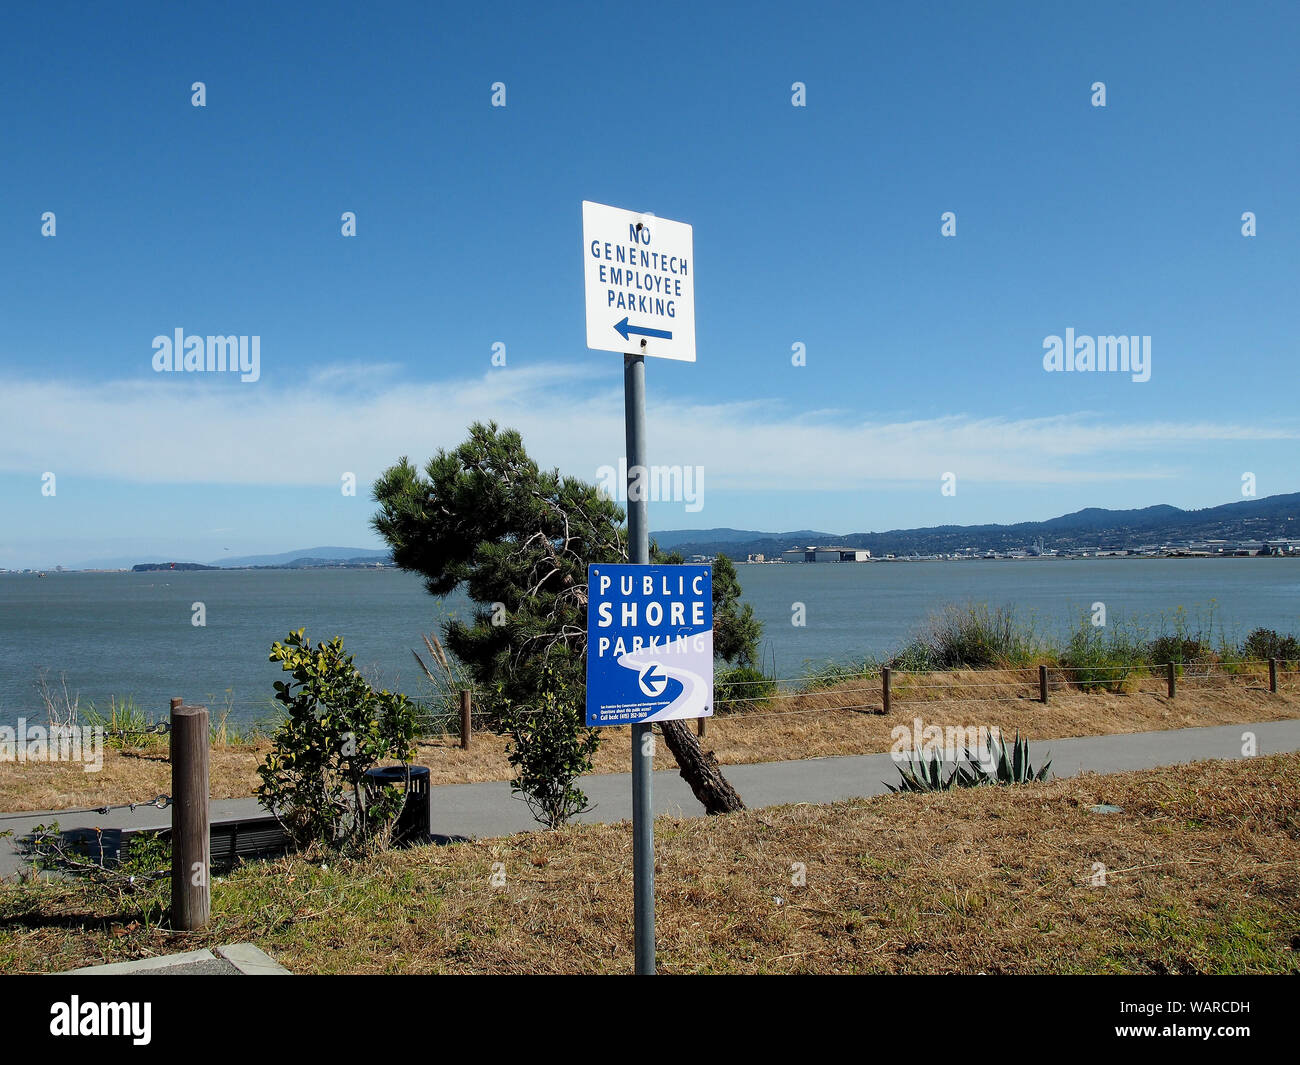 Pas de stationnement pour les employés et de Genentech Rive Public parking, signe à côté de sentier le long de la baie de San Francisco San Francisco, Californie du Sud Banque D'Images